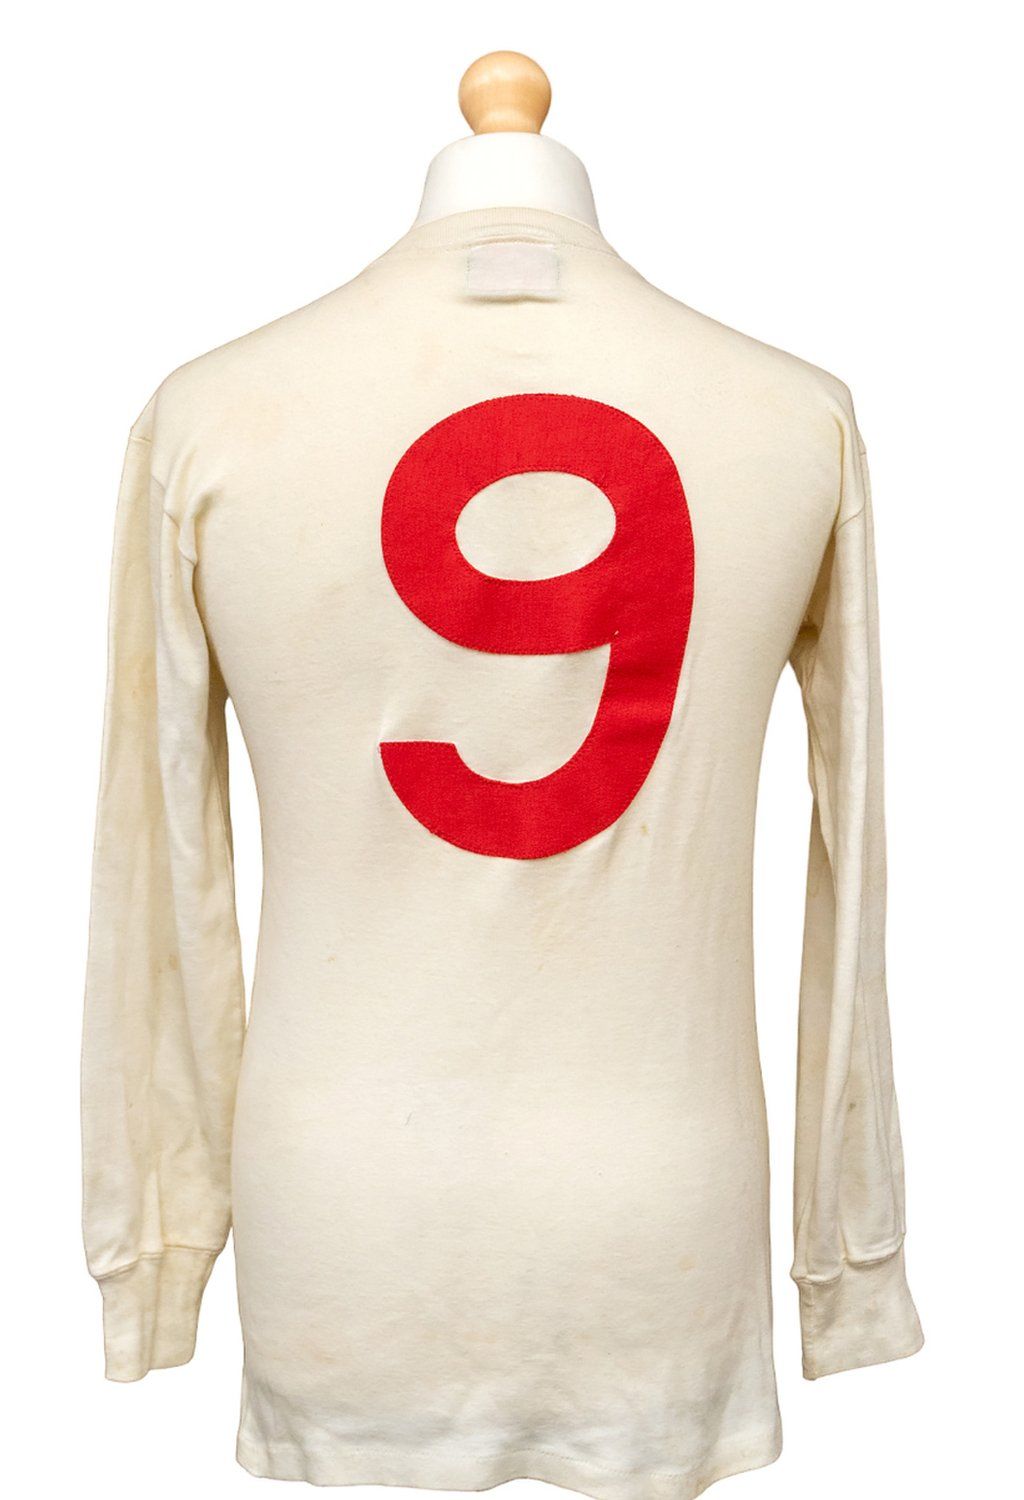 Sir Bobby Charlton's shirt reverse